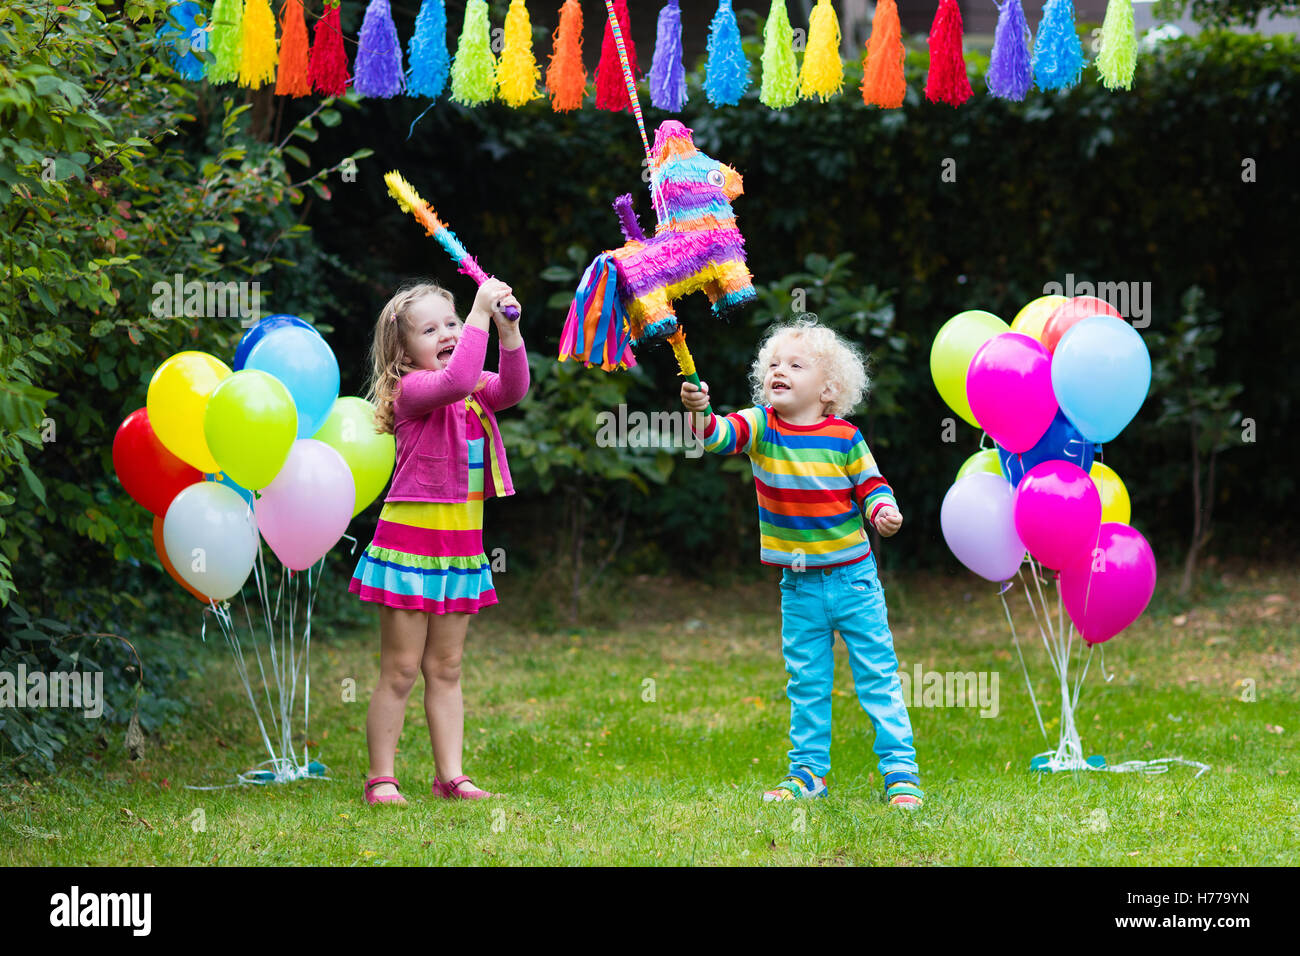 Kinder-Geburtstags-Party. Gruppe von Kindern Pinata schlagen und spielen  mit Luftballons. Familie mit Kindern feiern Geburtstag im Garten  Stockfotografie - Alamy